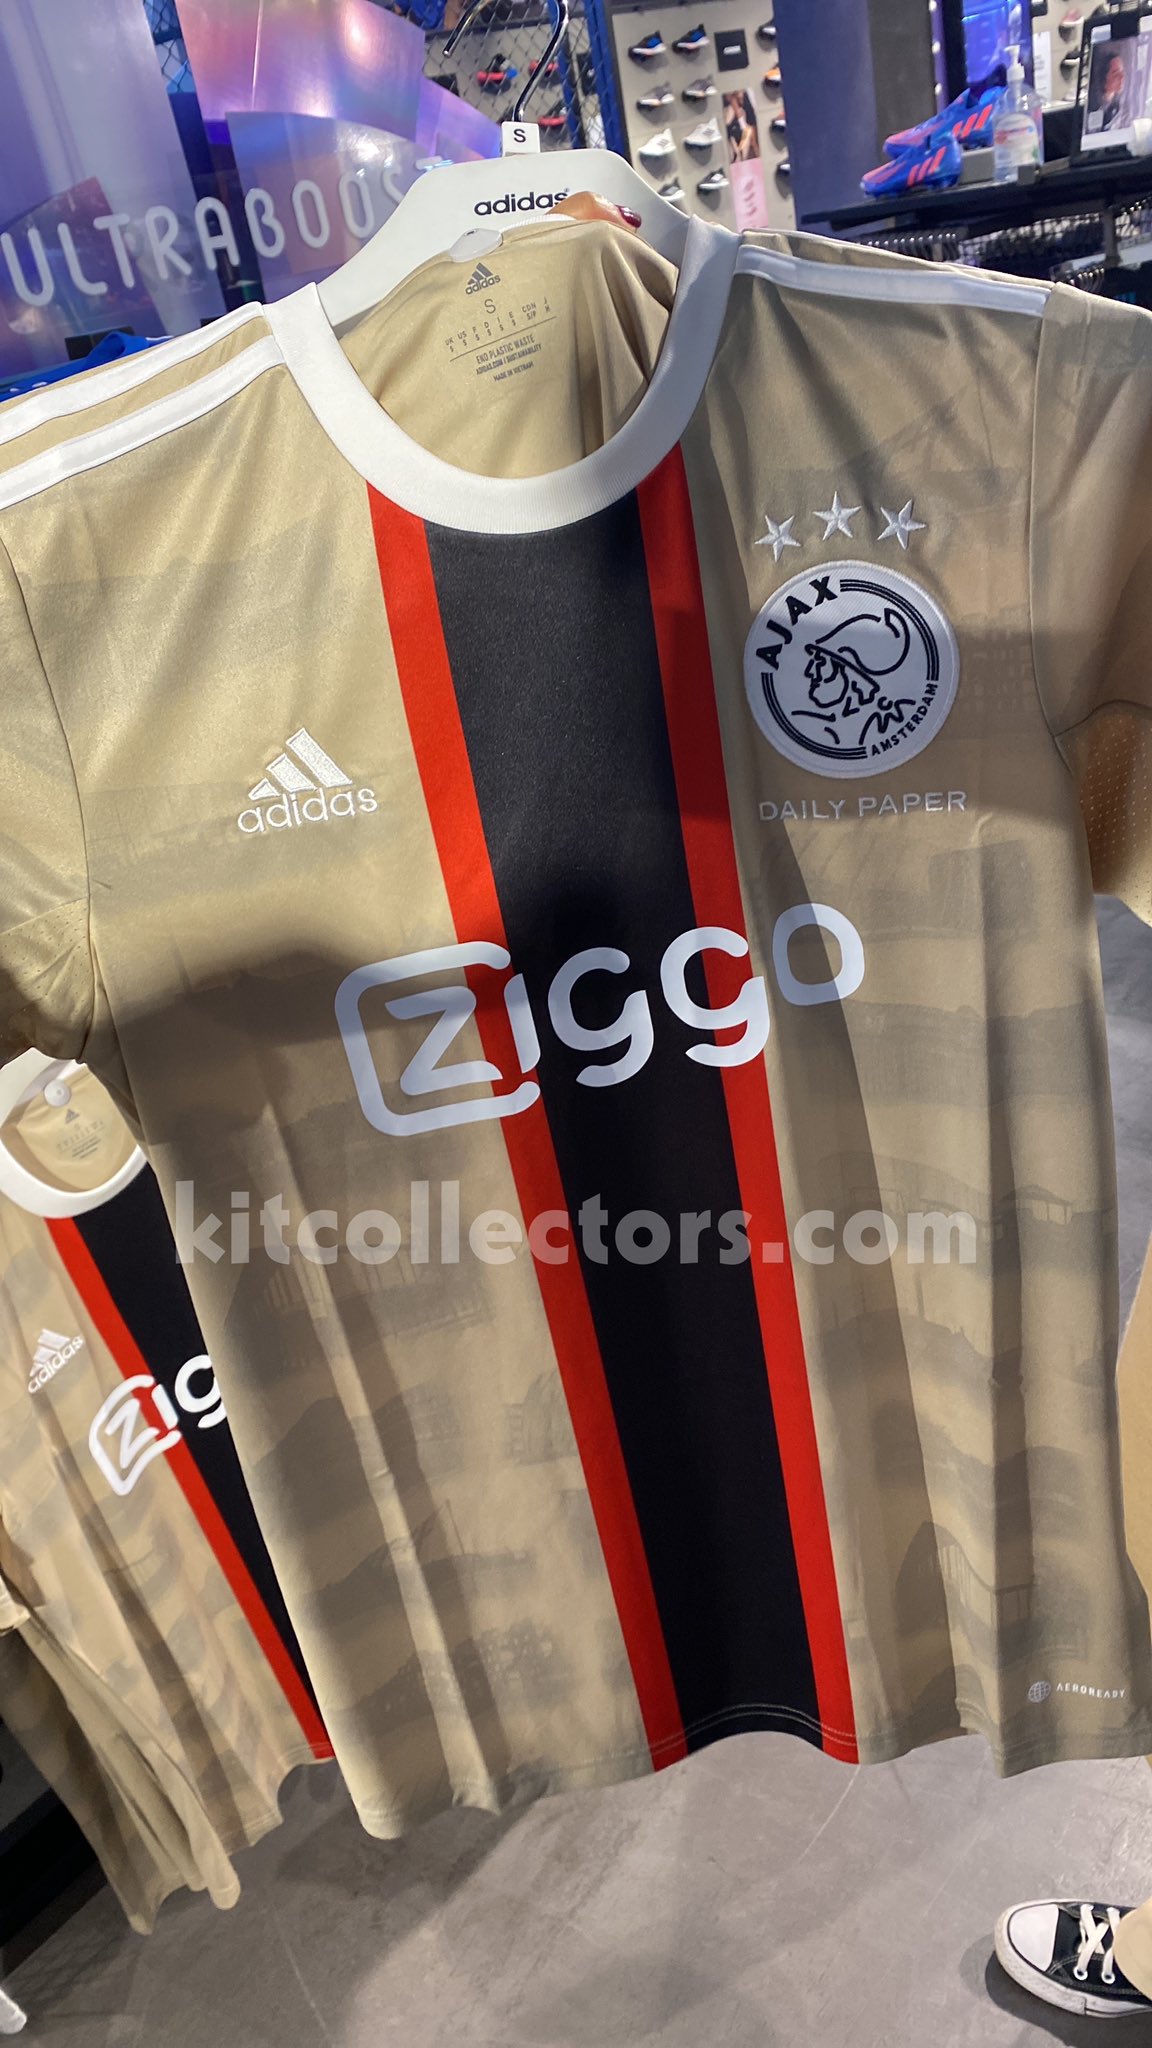 Le troisième maillot de football de l'Ajax x Daily Paper 2022-2023 a été dévoilé